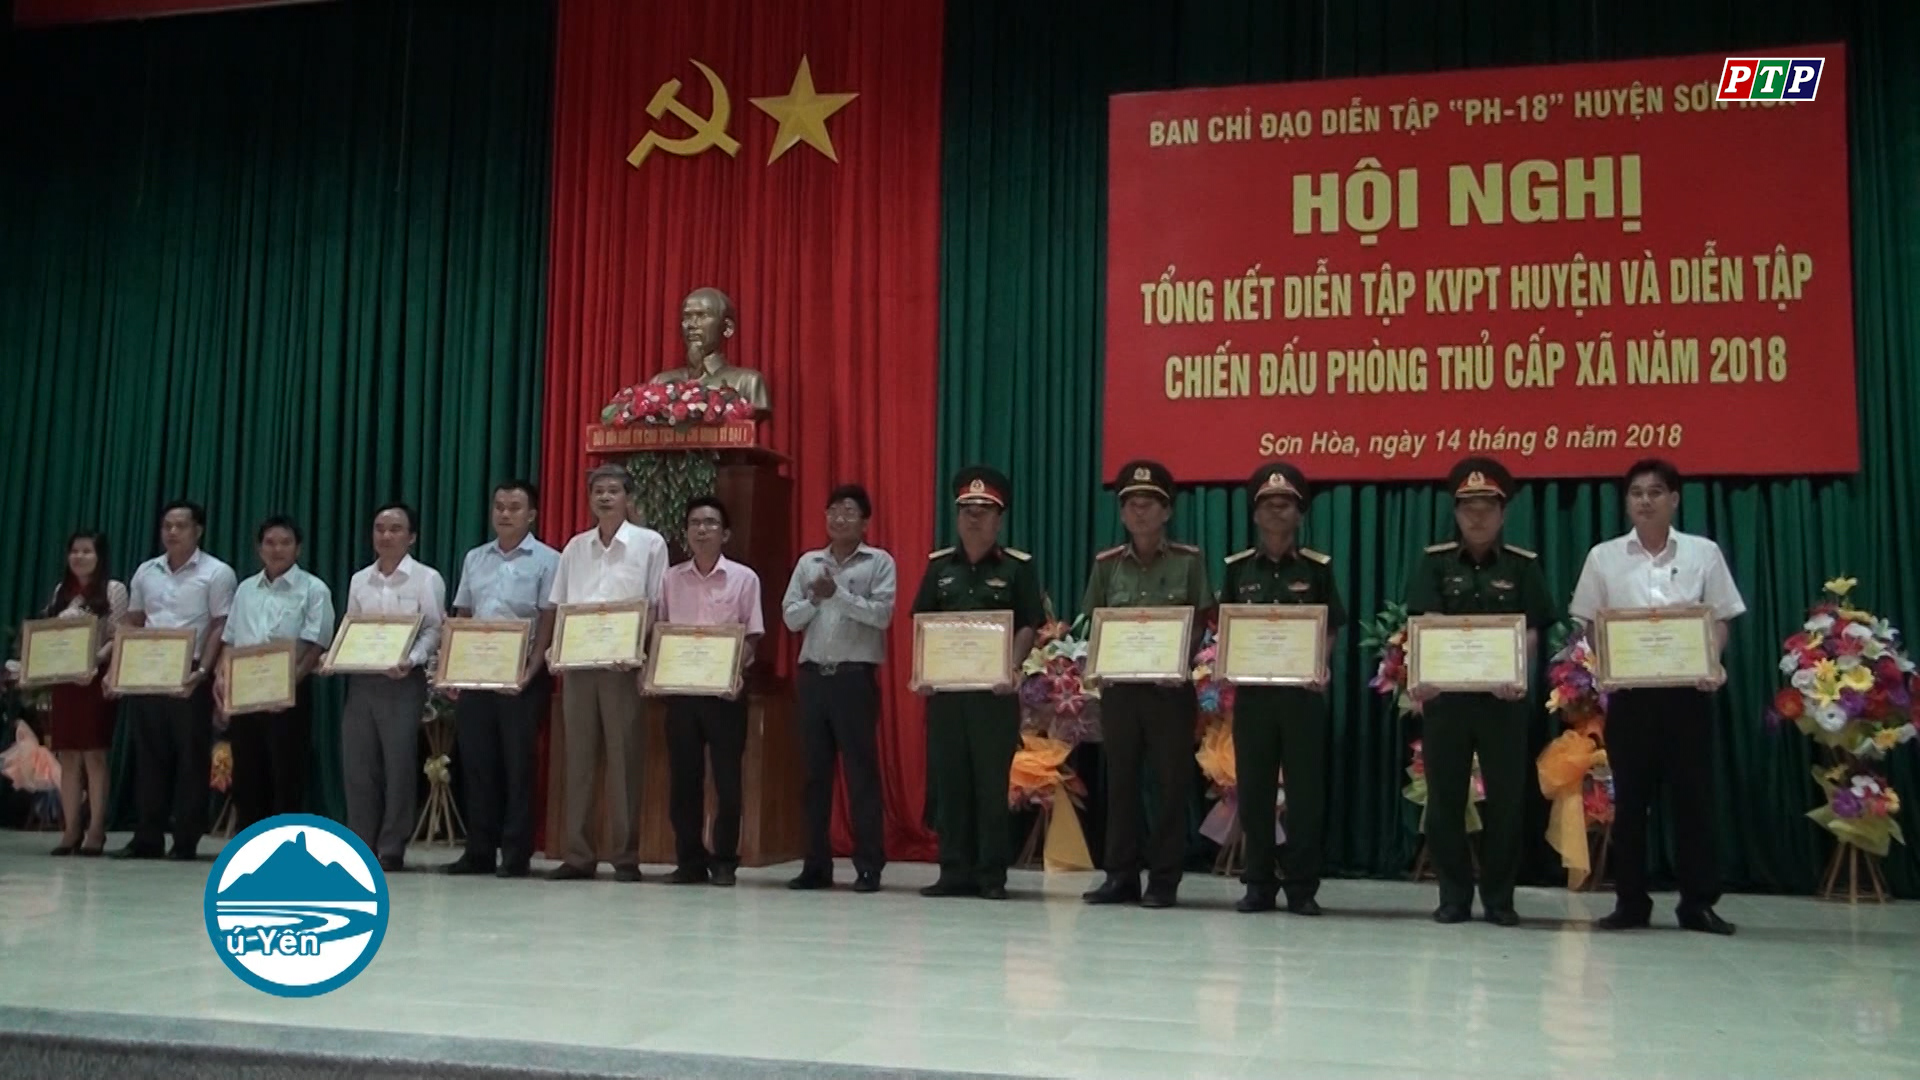 Sơn Hòa tổng kết diễn tập KVPT huyện và diễn tập chiến đấu phòng thủ cấp xã năm 2018